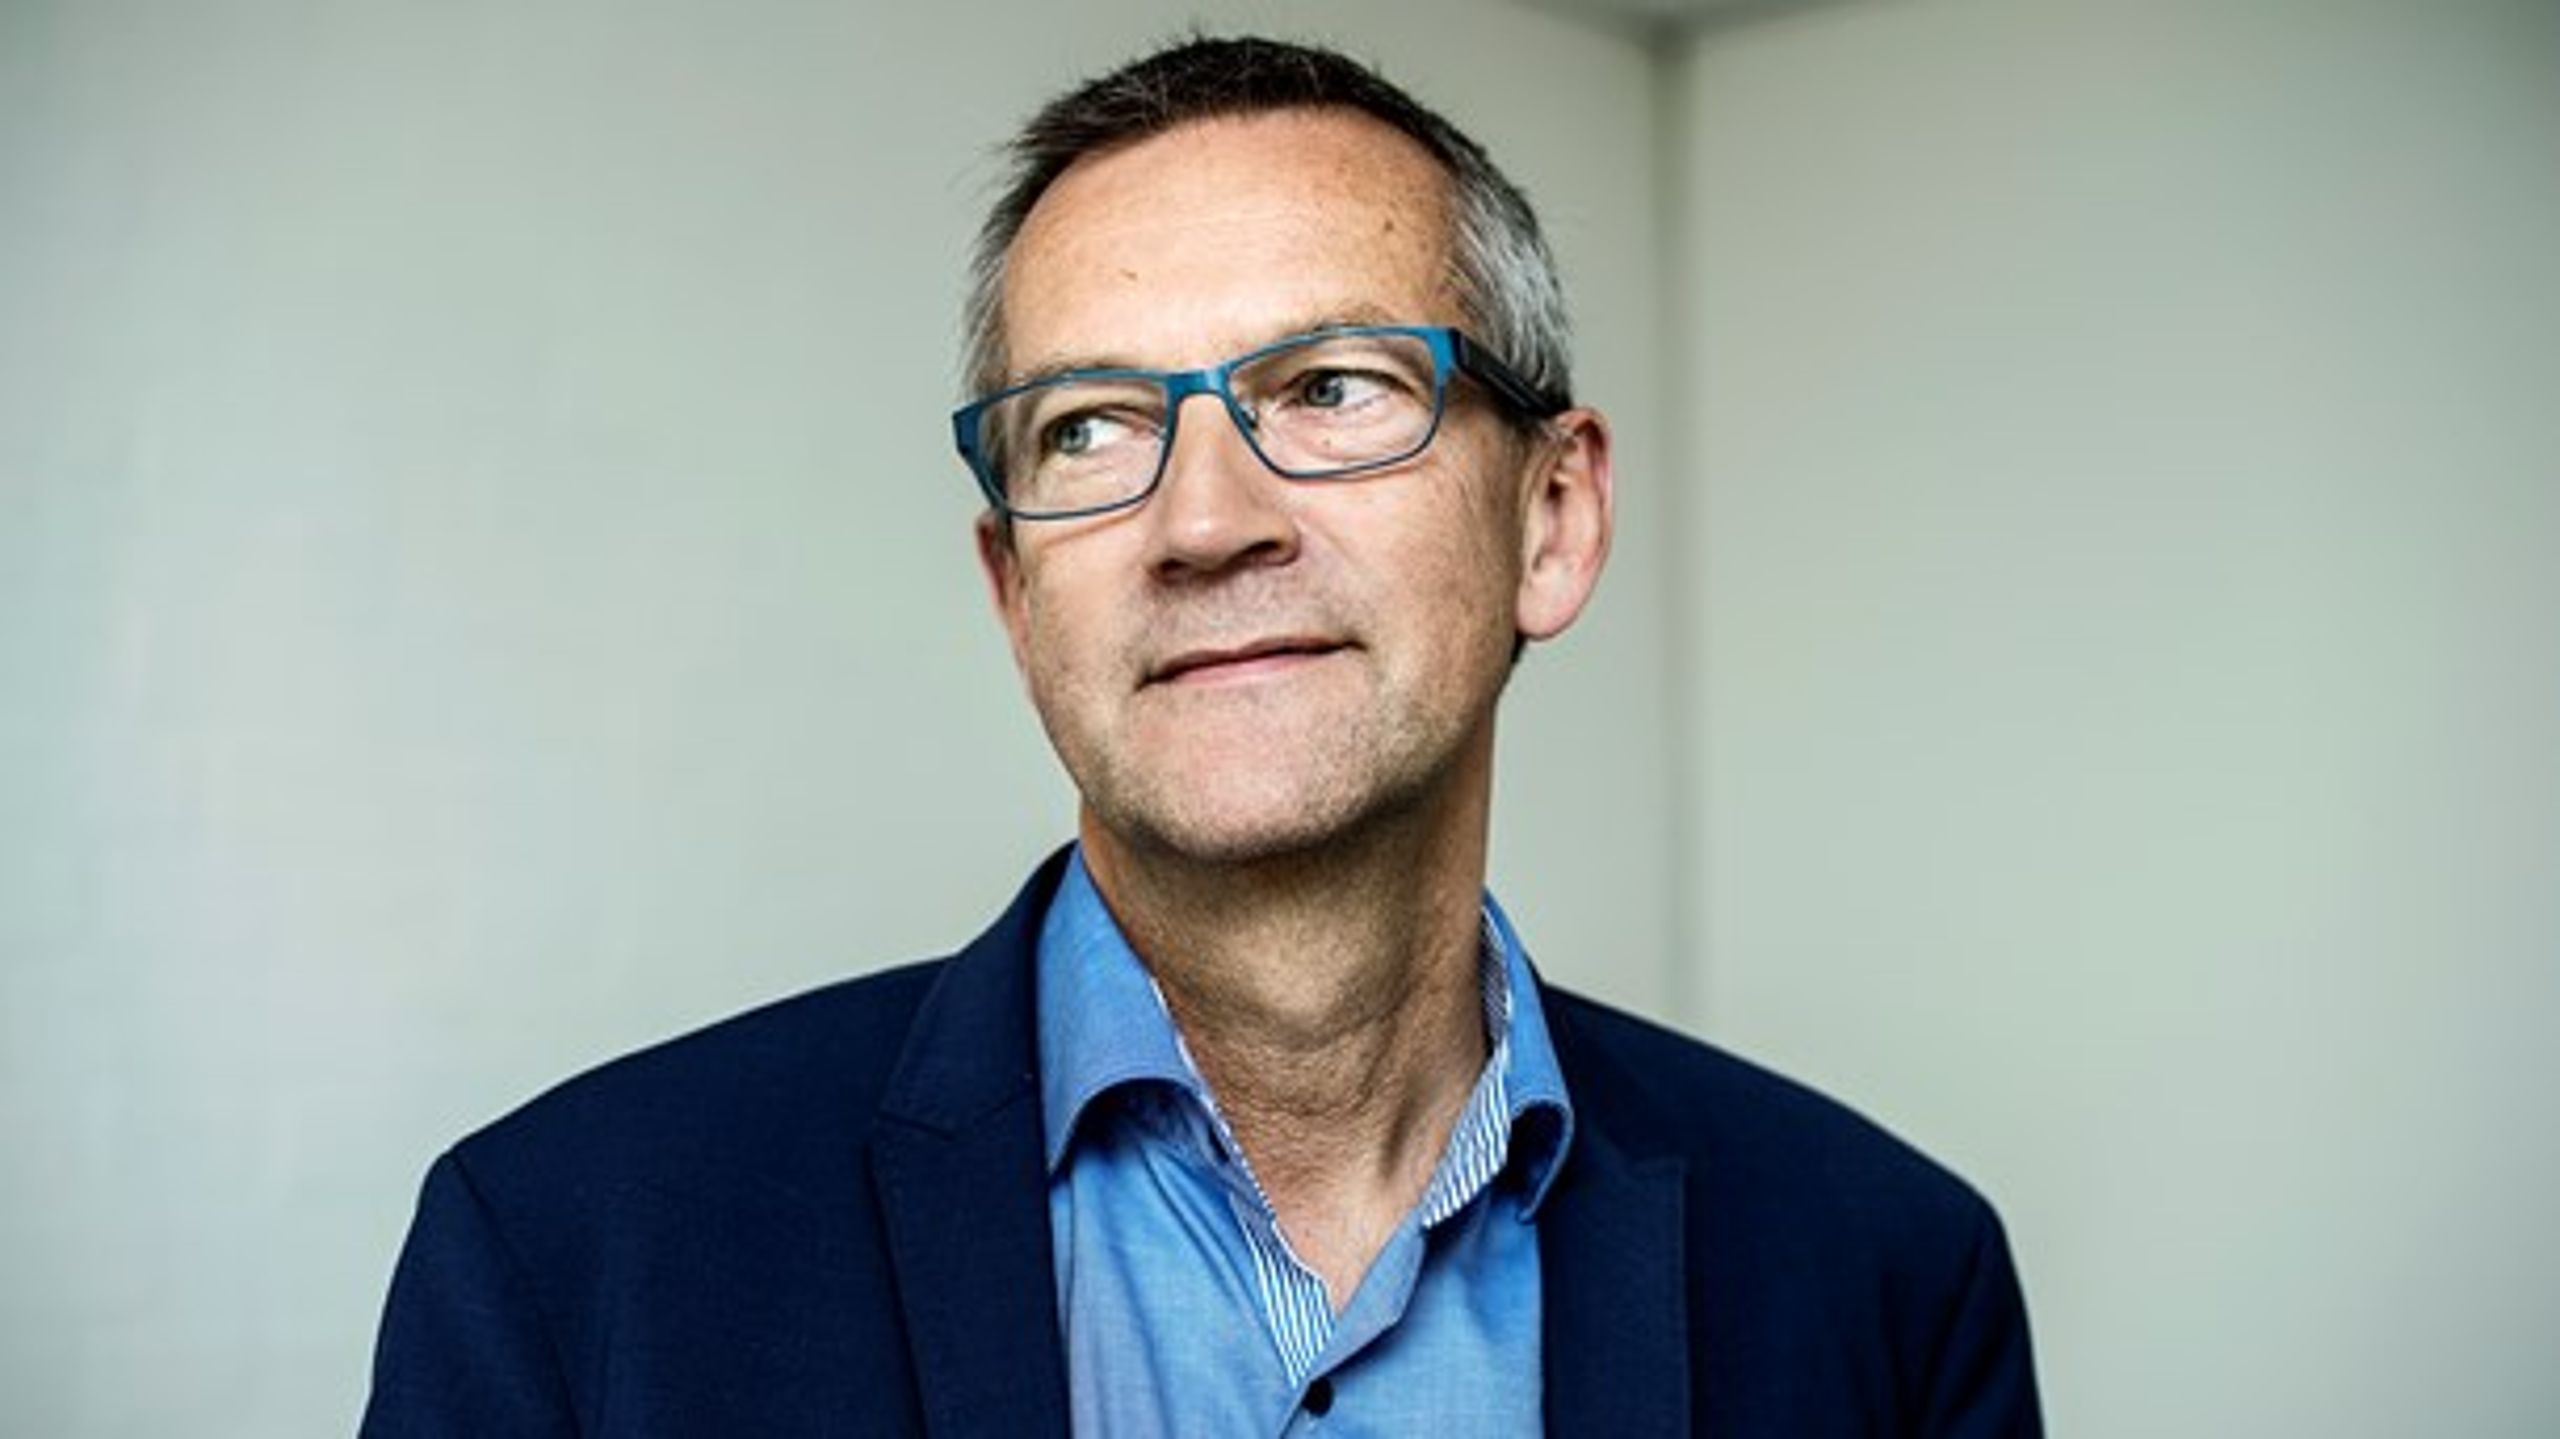 Jens Stenbæk skal efter 20 år som fuldtidspolitiker nu arbejde med politisk lobbyisme og interessevaretagelse hos Rud Pedersen.